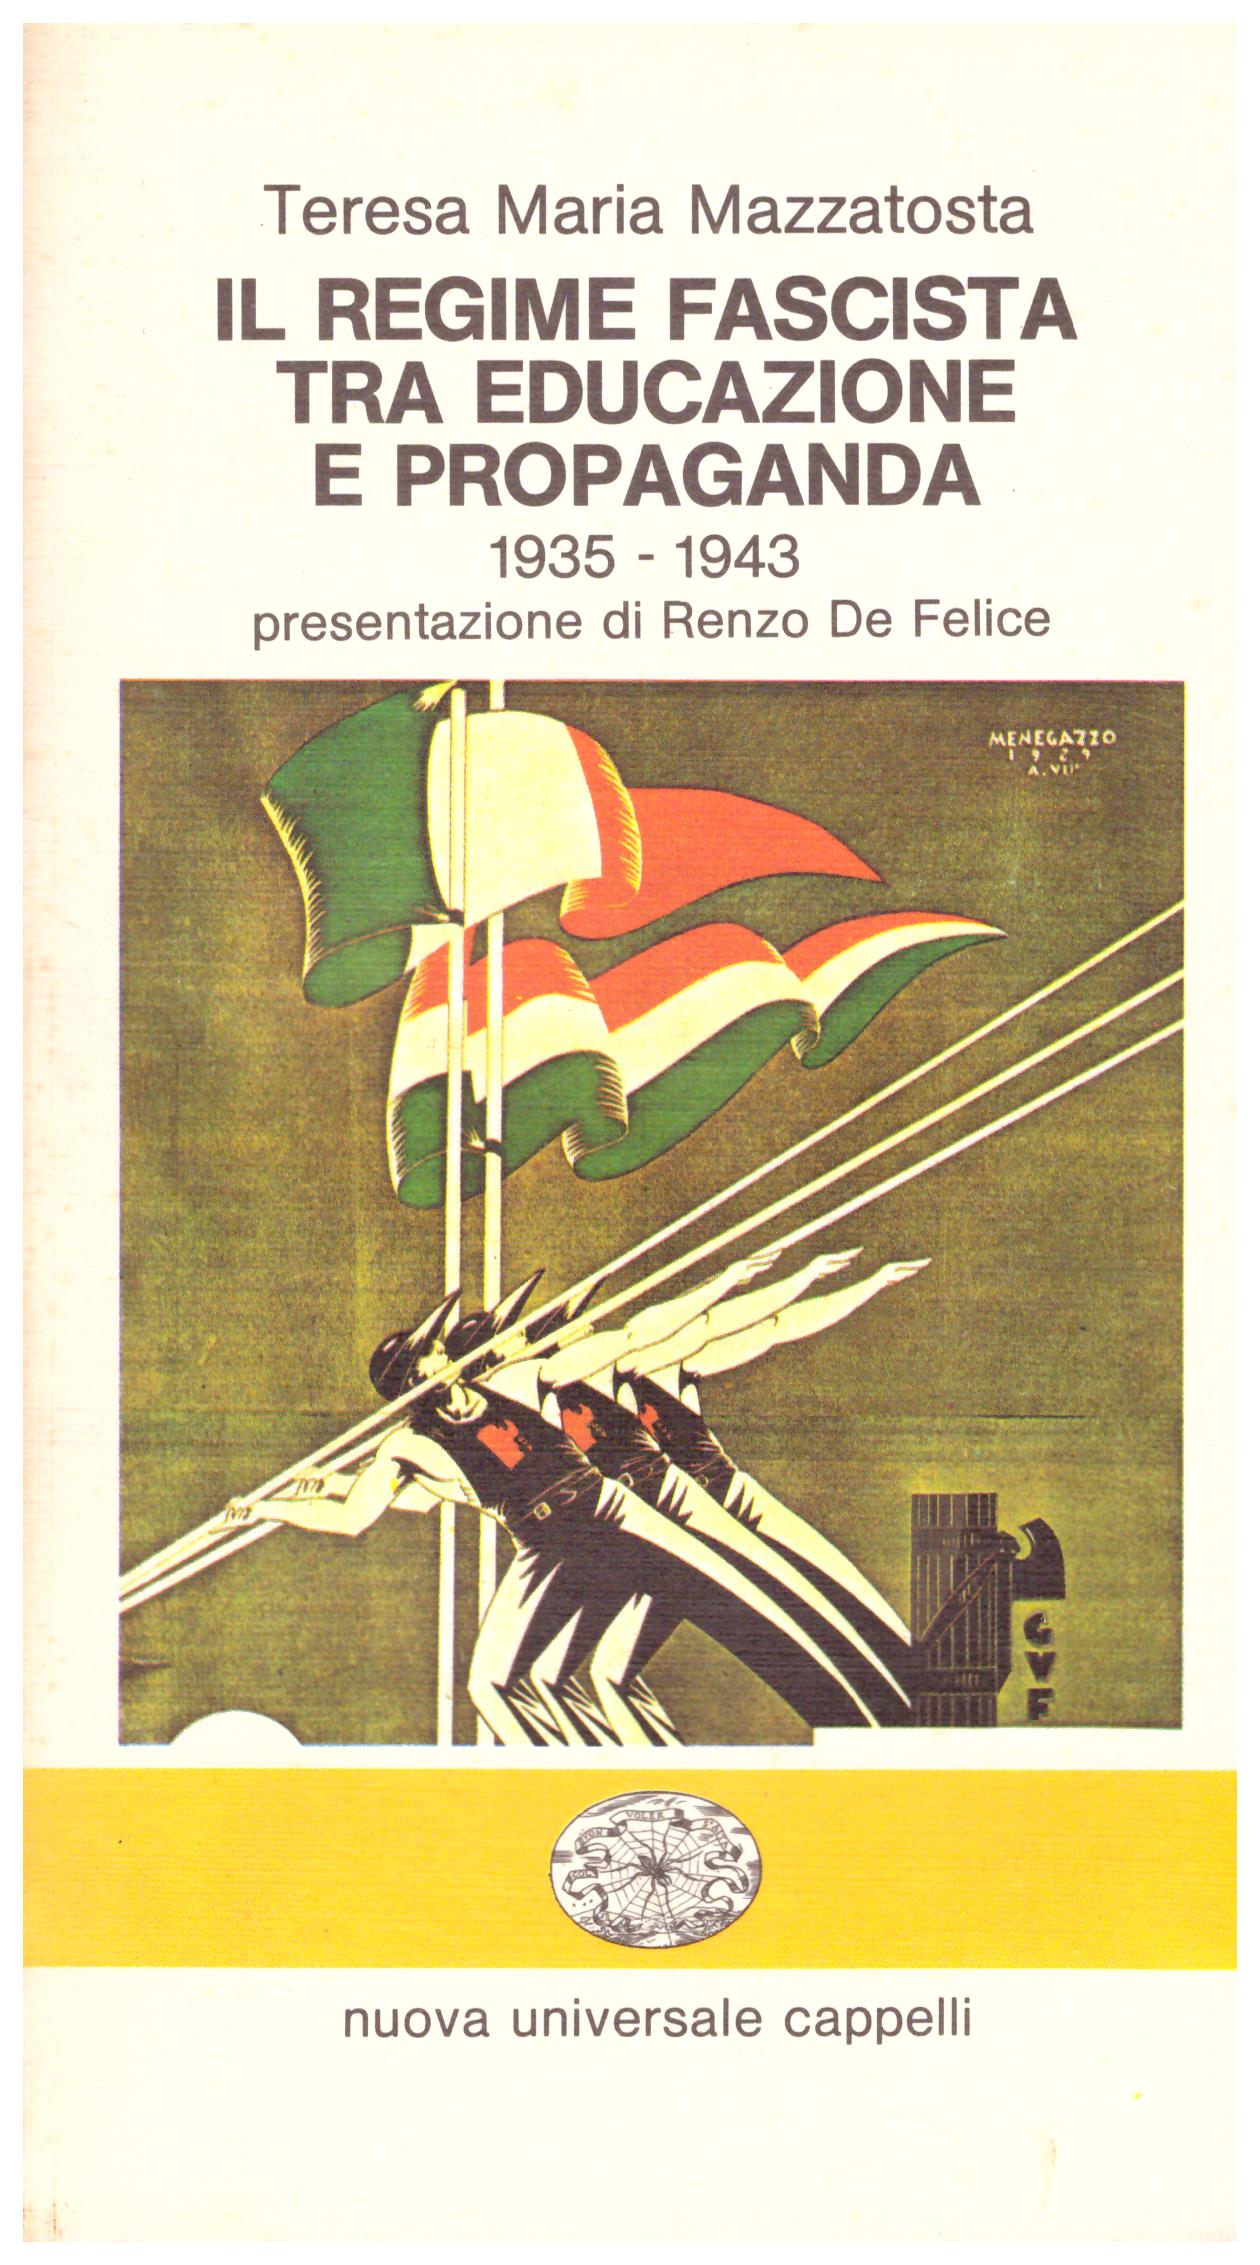 Il regime fascista tra educazione e propaganda. 1935 - 1943, con presentazione di Renzo De Felice.